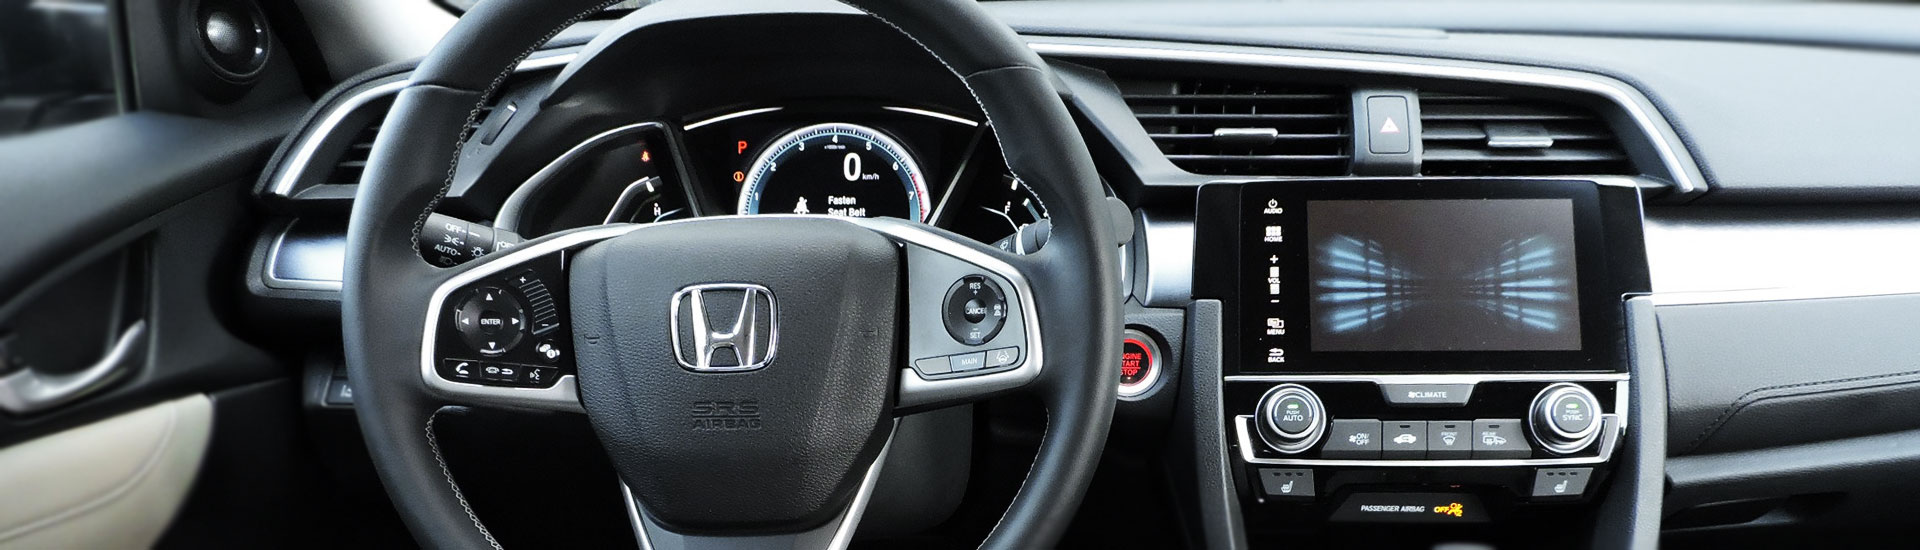 2009 Honda Pilot Custom Dash Kits